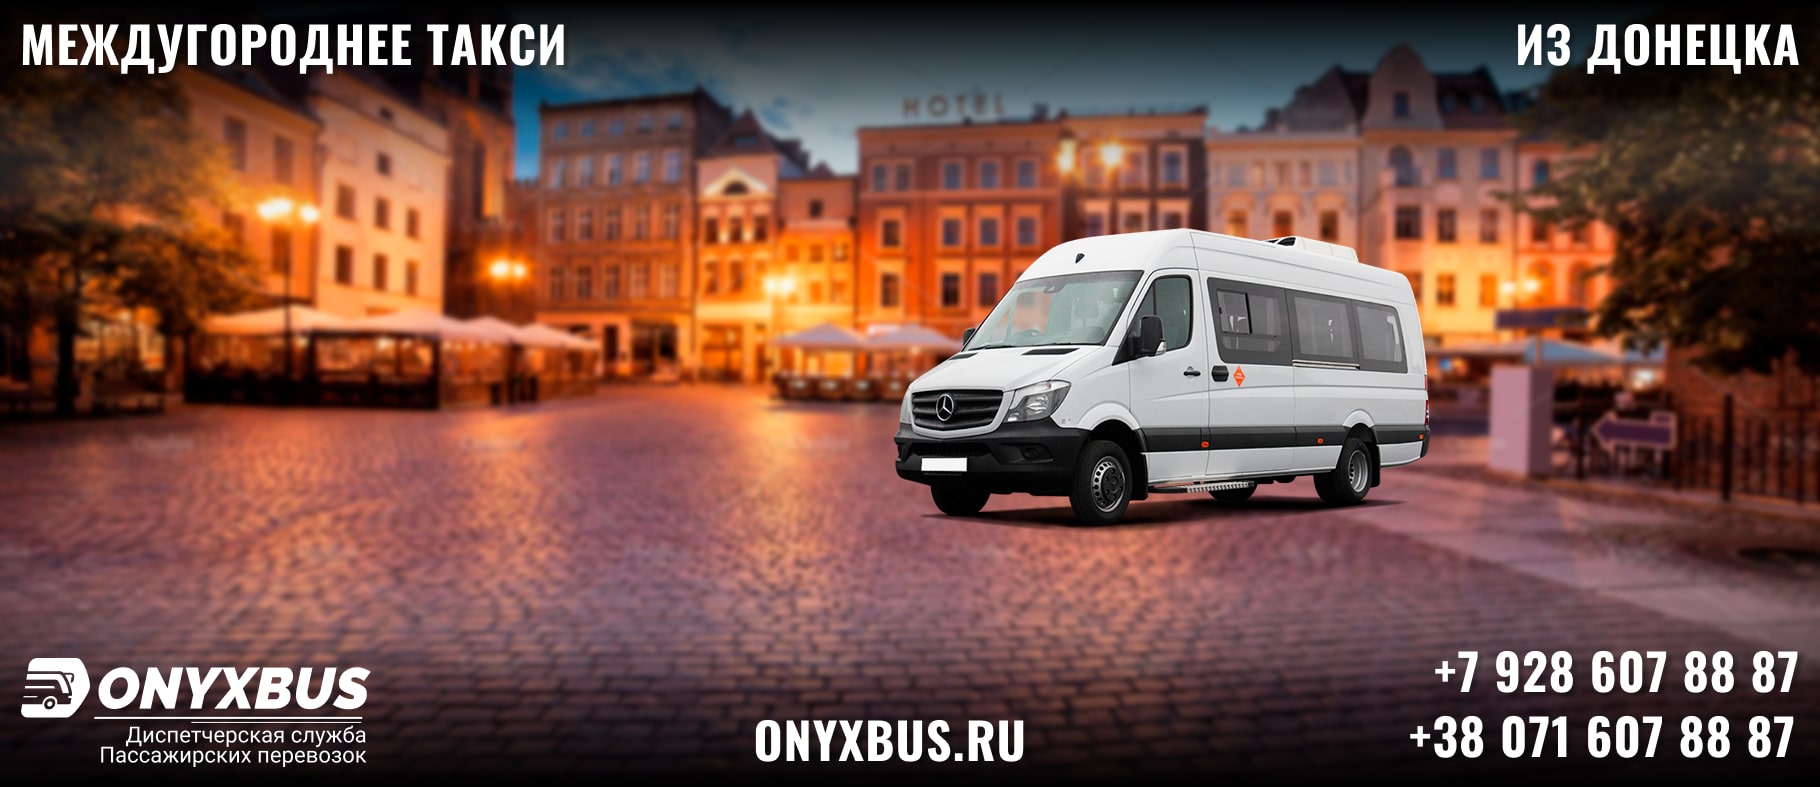 Заказ <br>Микроавтобуса Донецк - Партенит